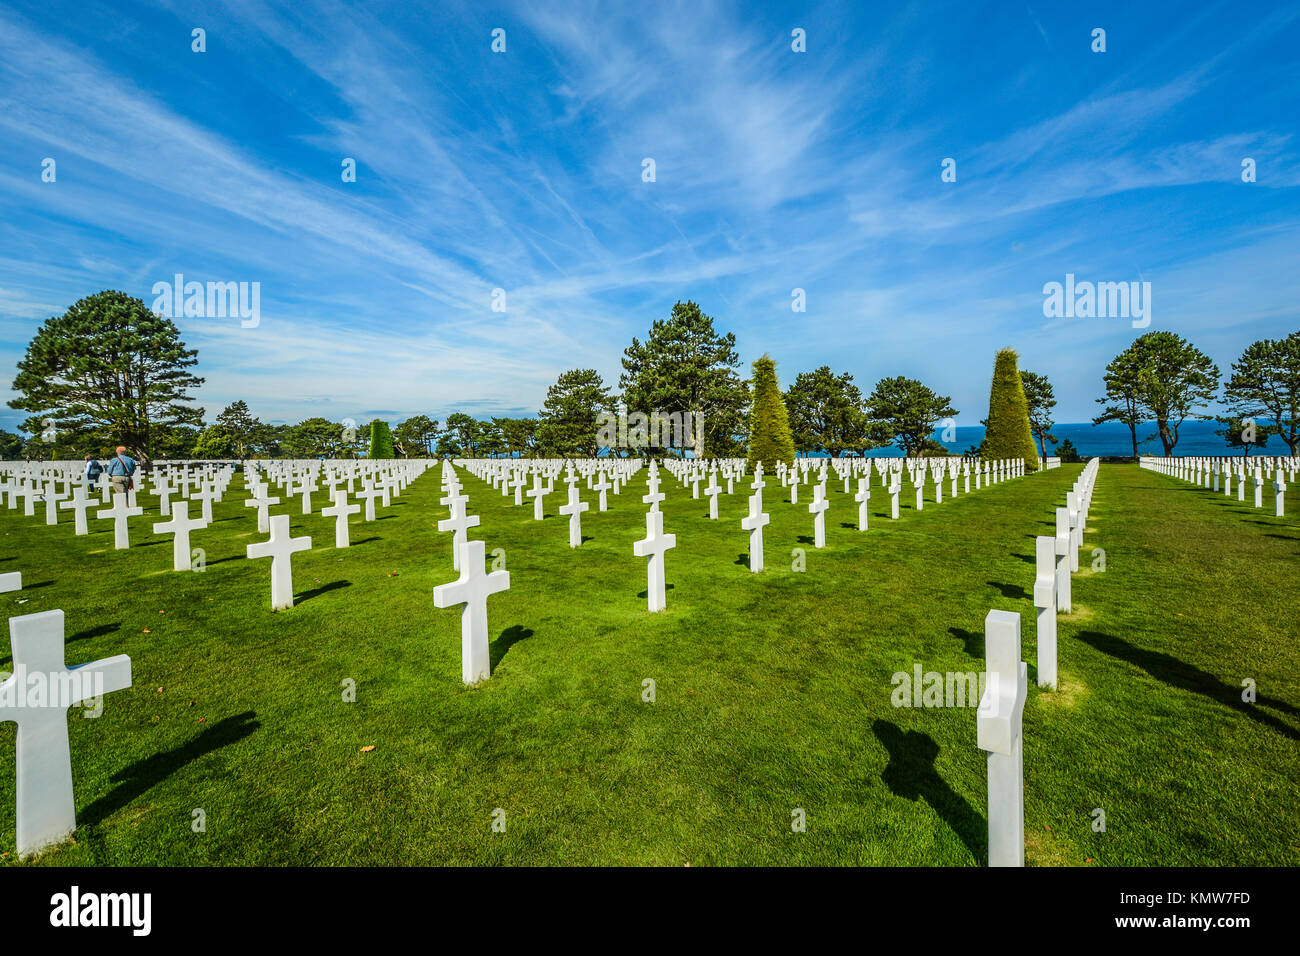 La Normandia Cimitero e memoriale americano a Colleville-sur-Mer in una giornata di sole con righe di lapidi in onore dei caduti Foto Stock